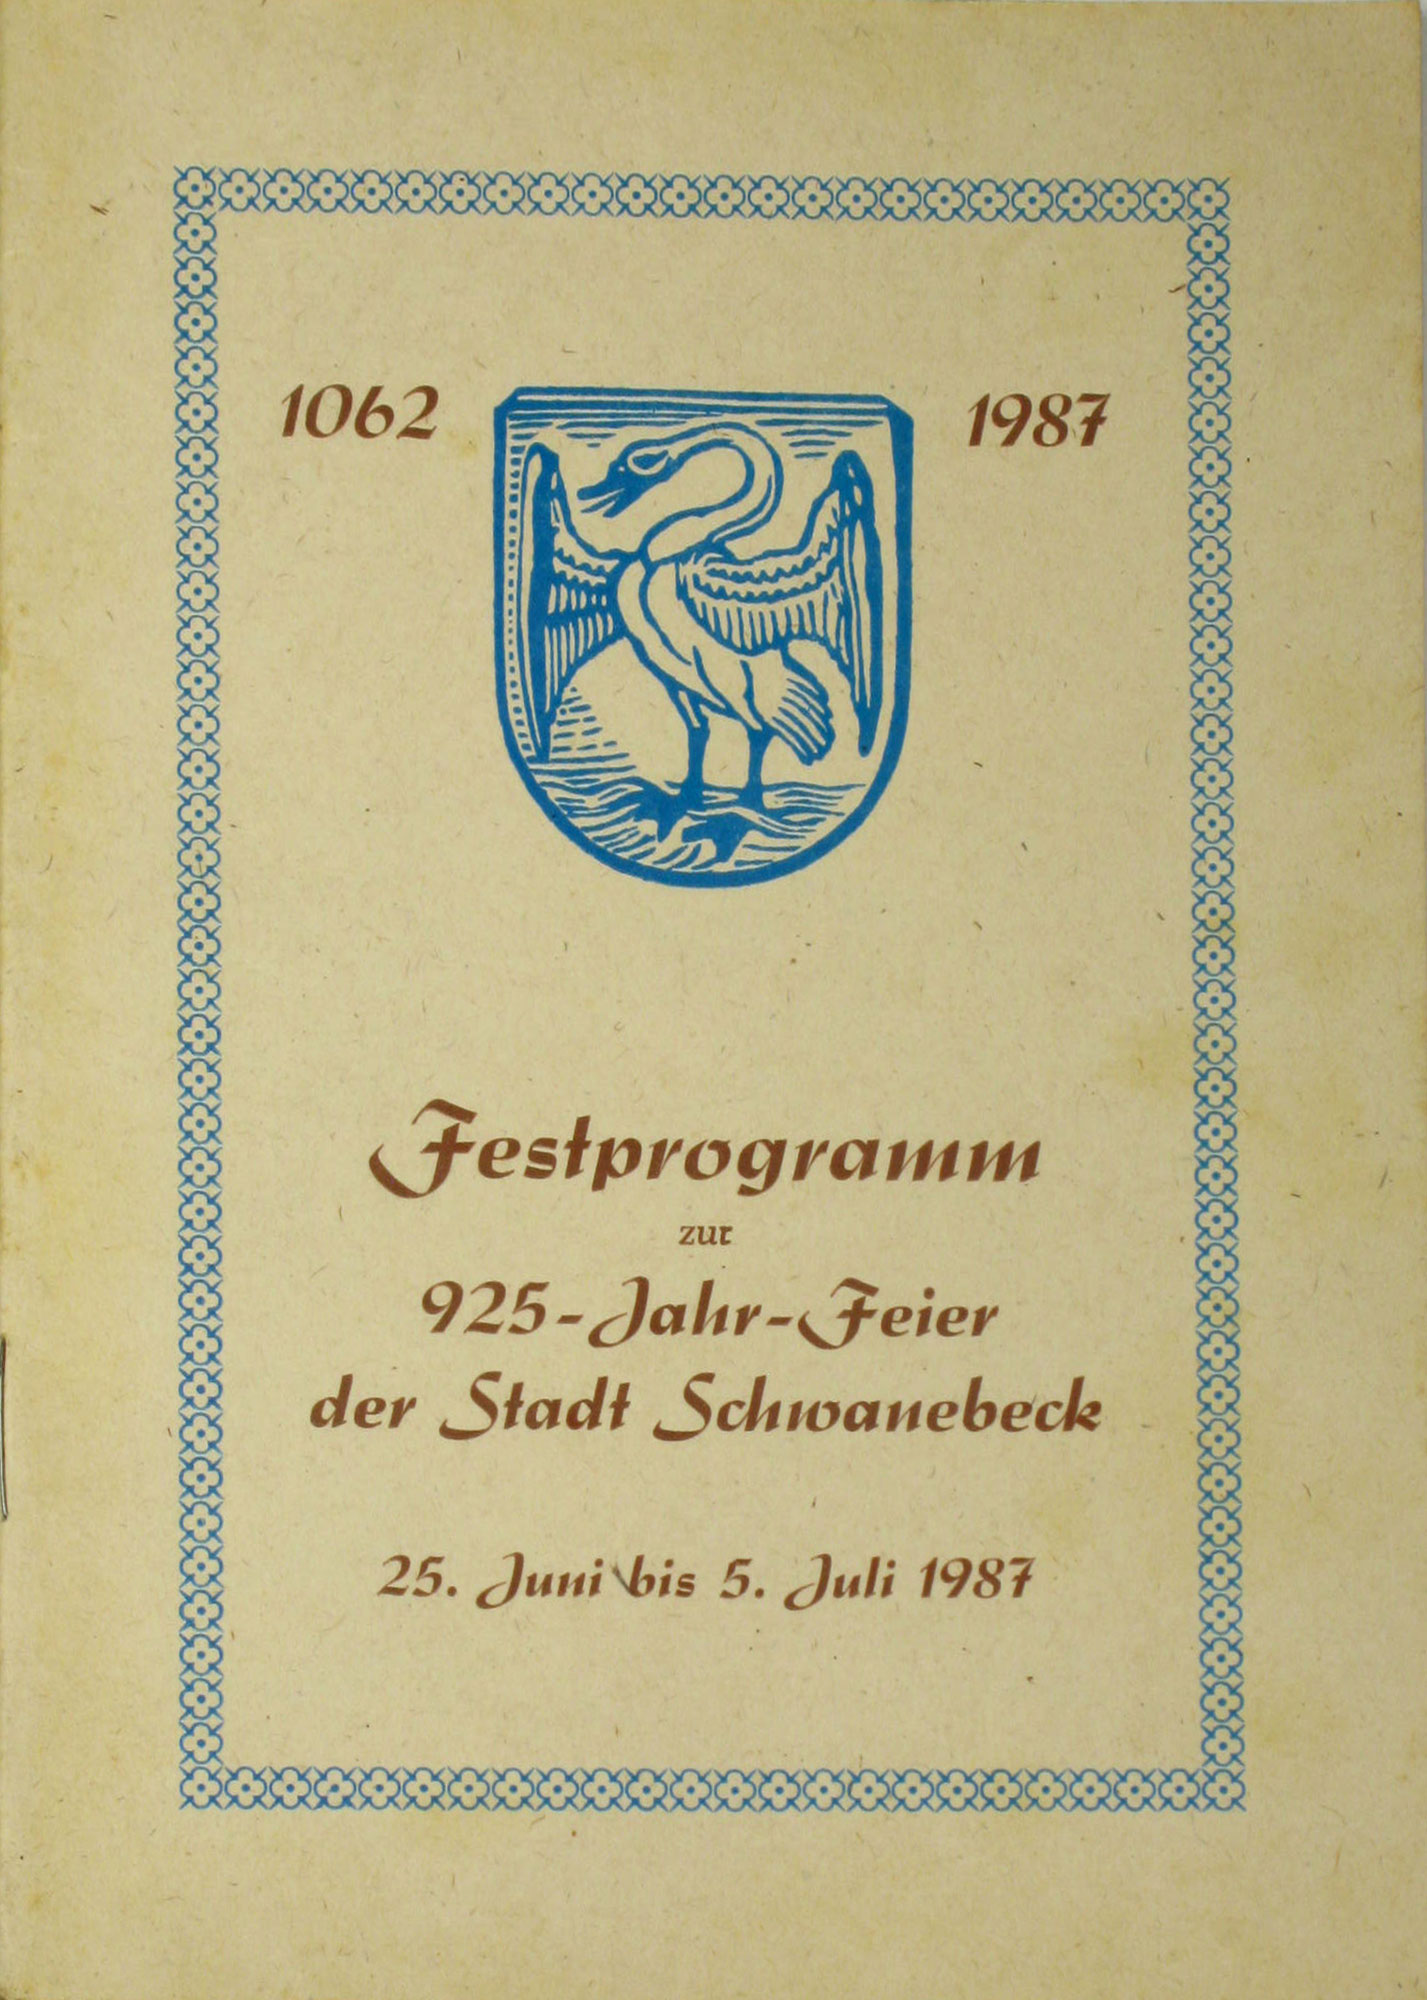 Autorenkollektiv:  Festprogramm zur 925-Jahr-Feier der Stadt Schwanebeck 25. Juni bis 5. Juli 1987 